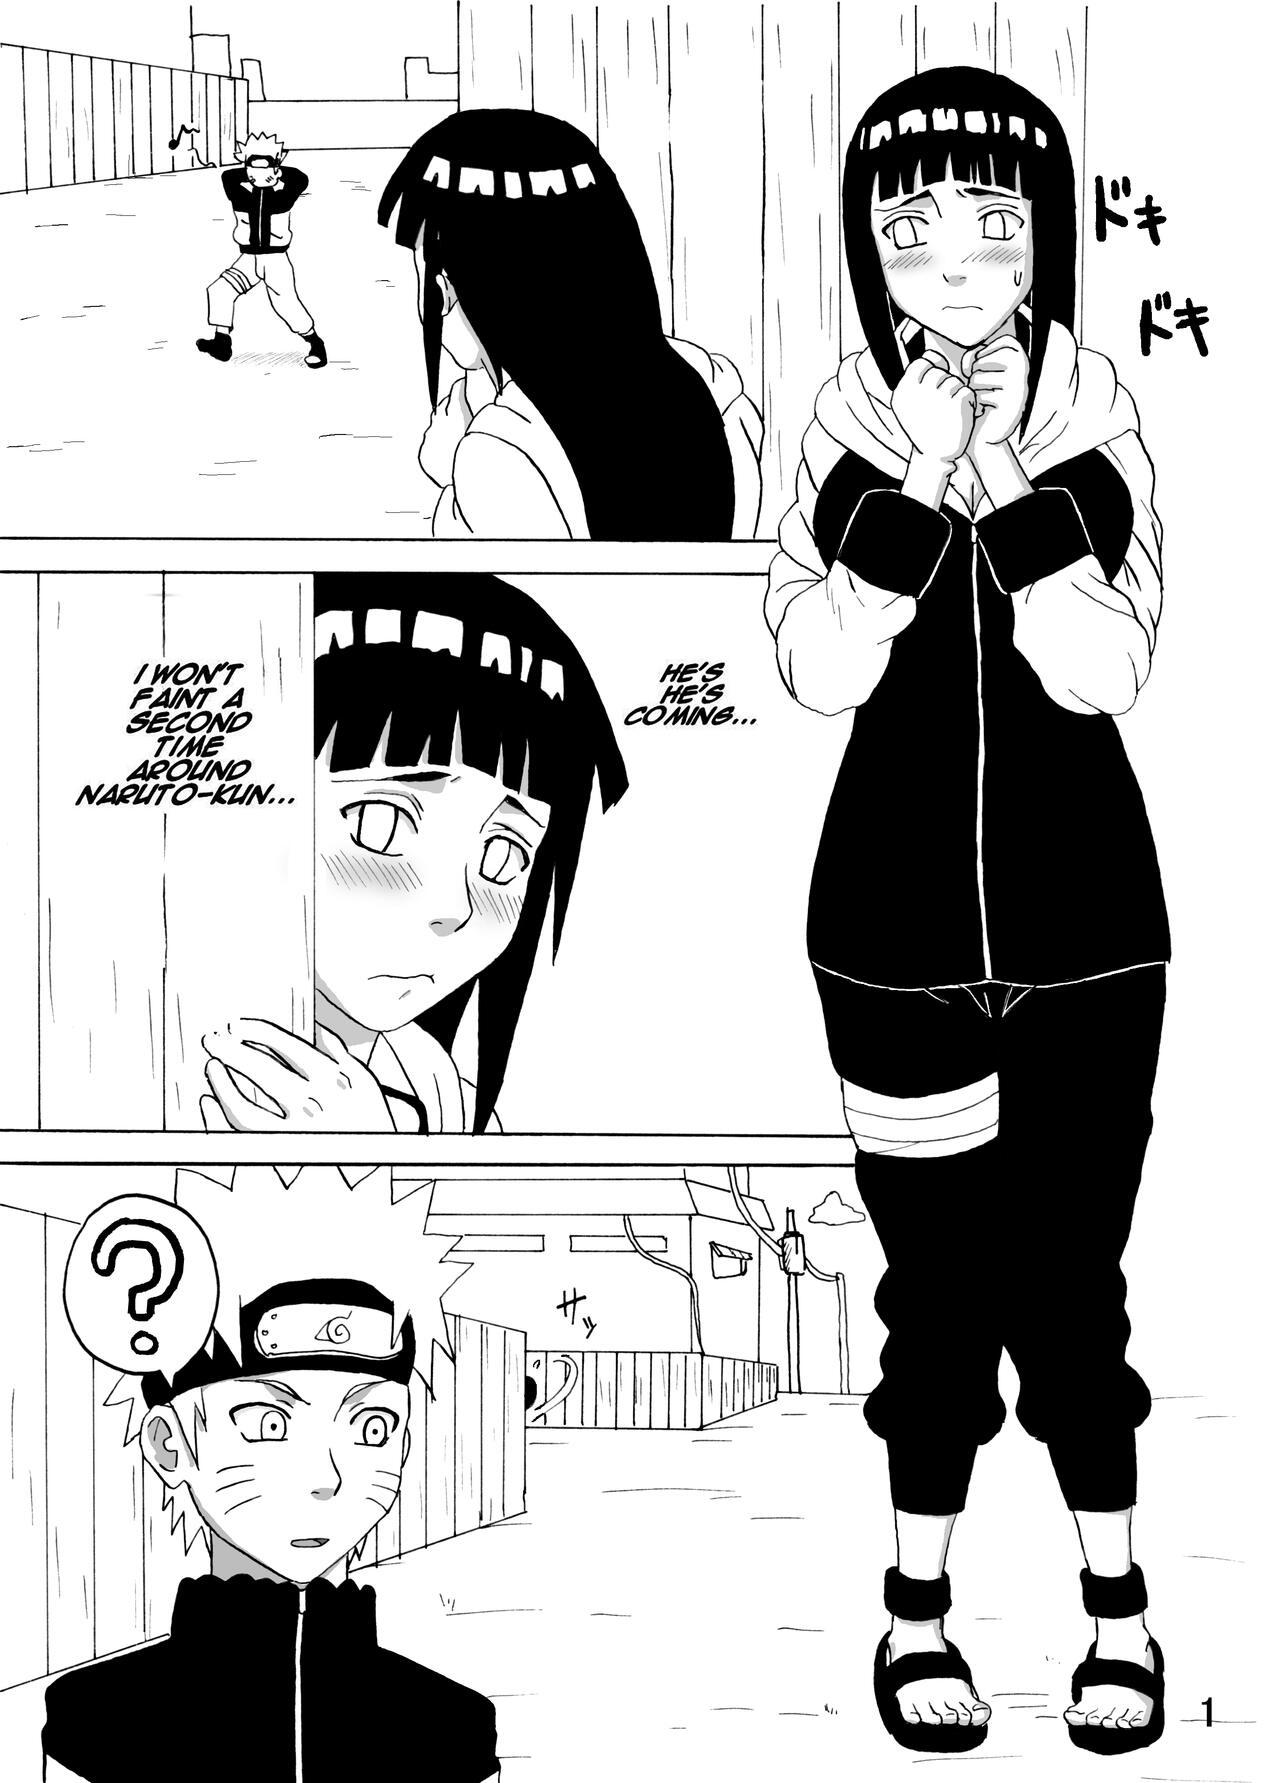 Pov Sex Hinata Ganbaru! | Hinata Fight! - Naruto Blacks - Page 2